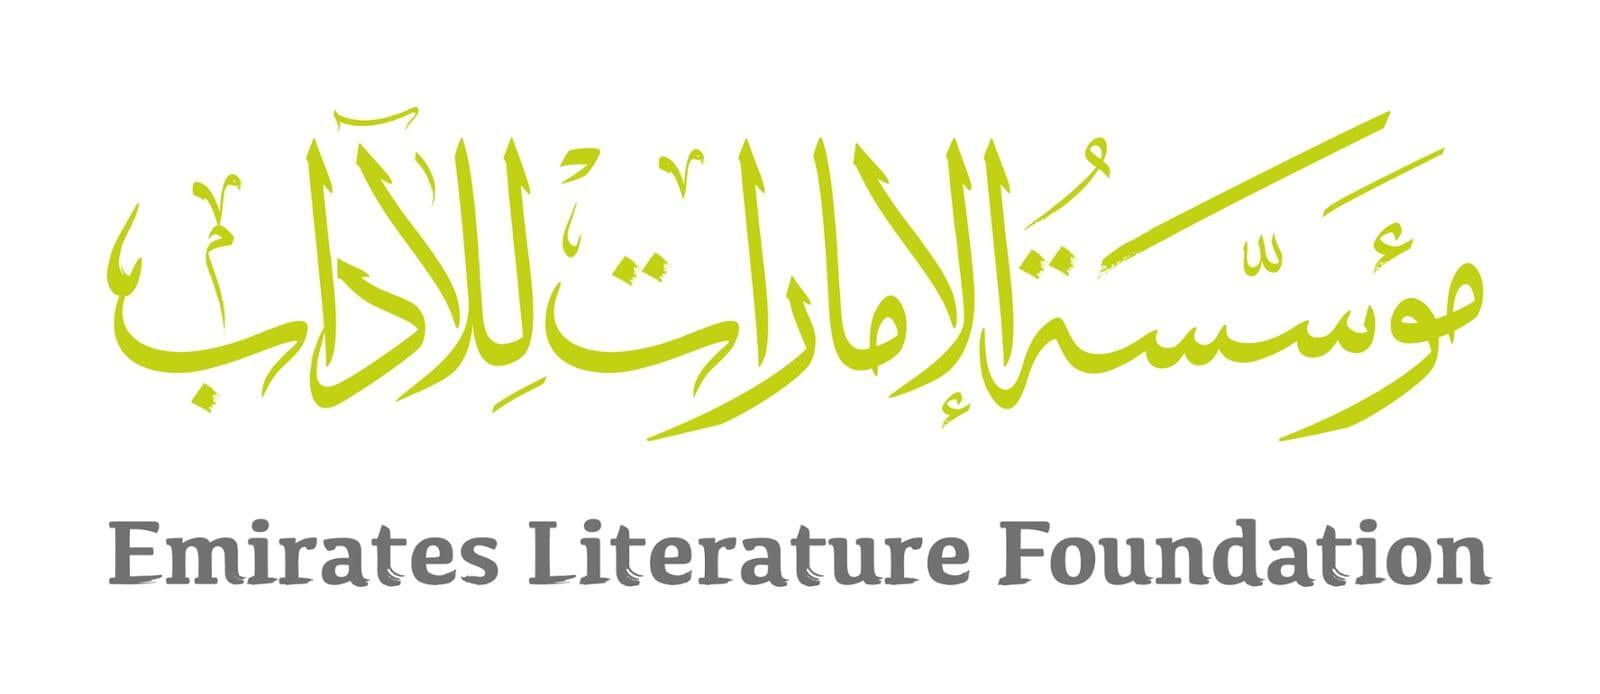 Emirates Literature Foundation Blog (ELF)